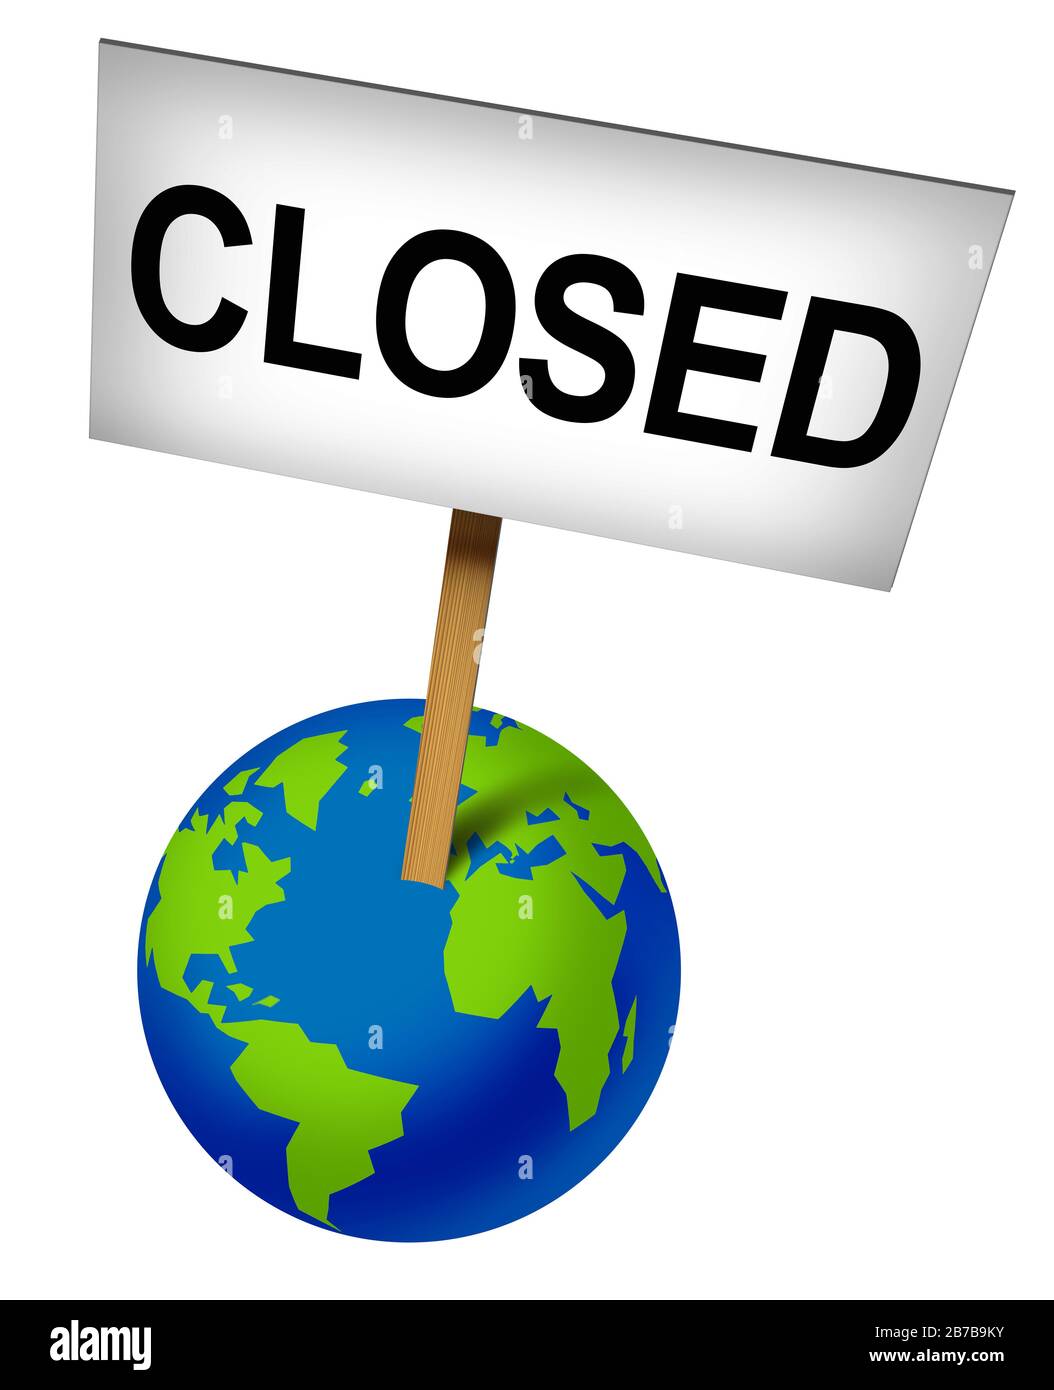 Eventos globales cancelados y cierres internacionales debido a coronavirus y negocios mundiales cerrados por negocios debido a temores de virus o crisis económica. Foto de stock